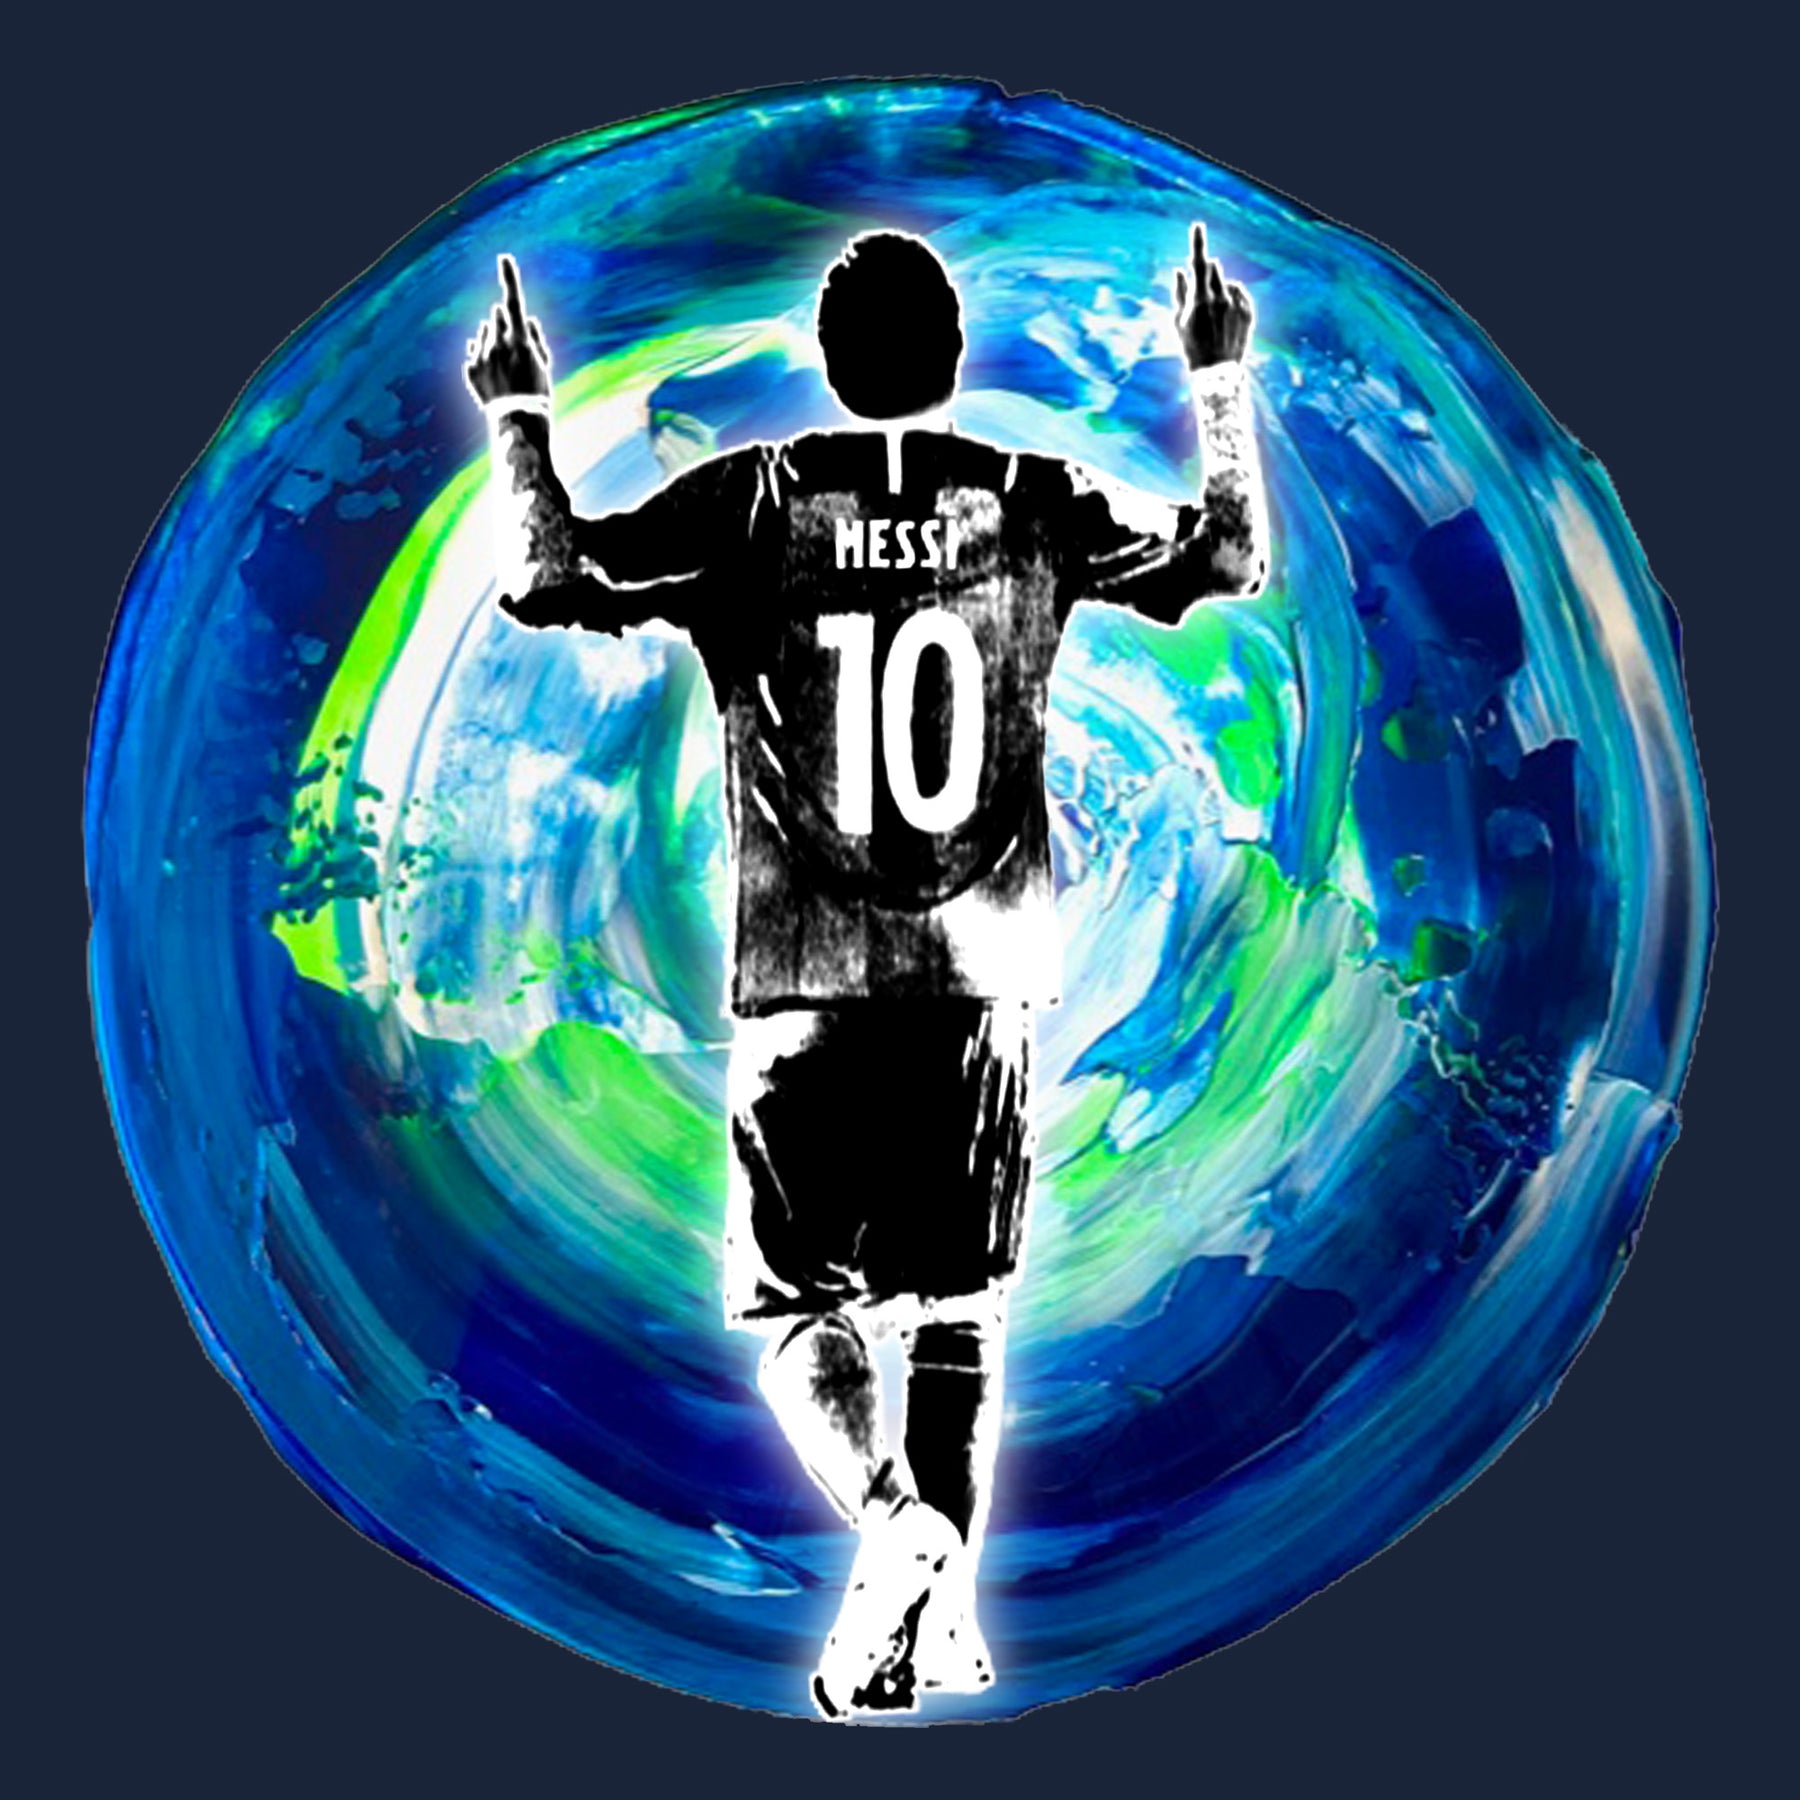 Messi_Earth_Silhouette_Tee - Áo thun Messi đầy phong cách và tầm nhìn toàn cầu này sẽ khiến bạn đắm say với sự nổi tiếng và tài năng của Messi. Thông qua hình ảnh toàn cầu của trái đất lồng vào hình ảnh của Messi, đó là một sự pha trộn tuyệt vời của phong cách và tầm nhìn.